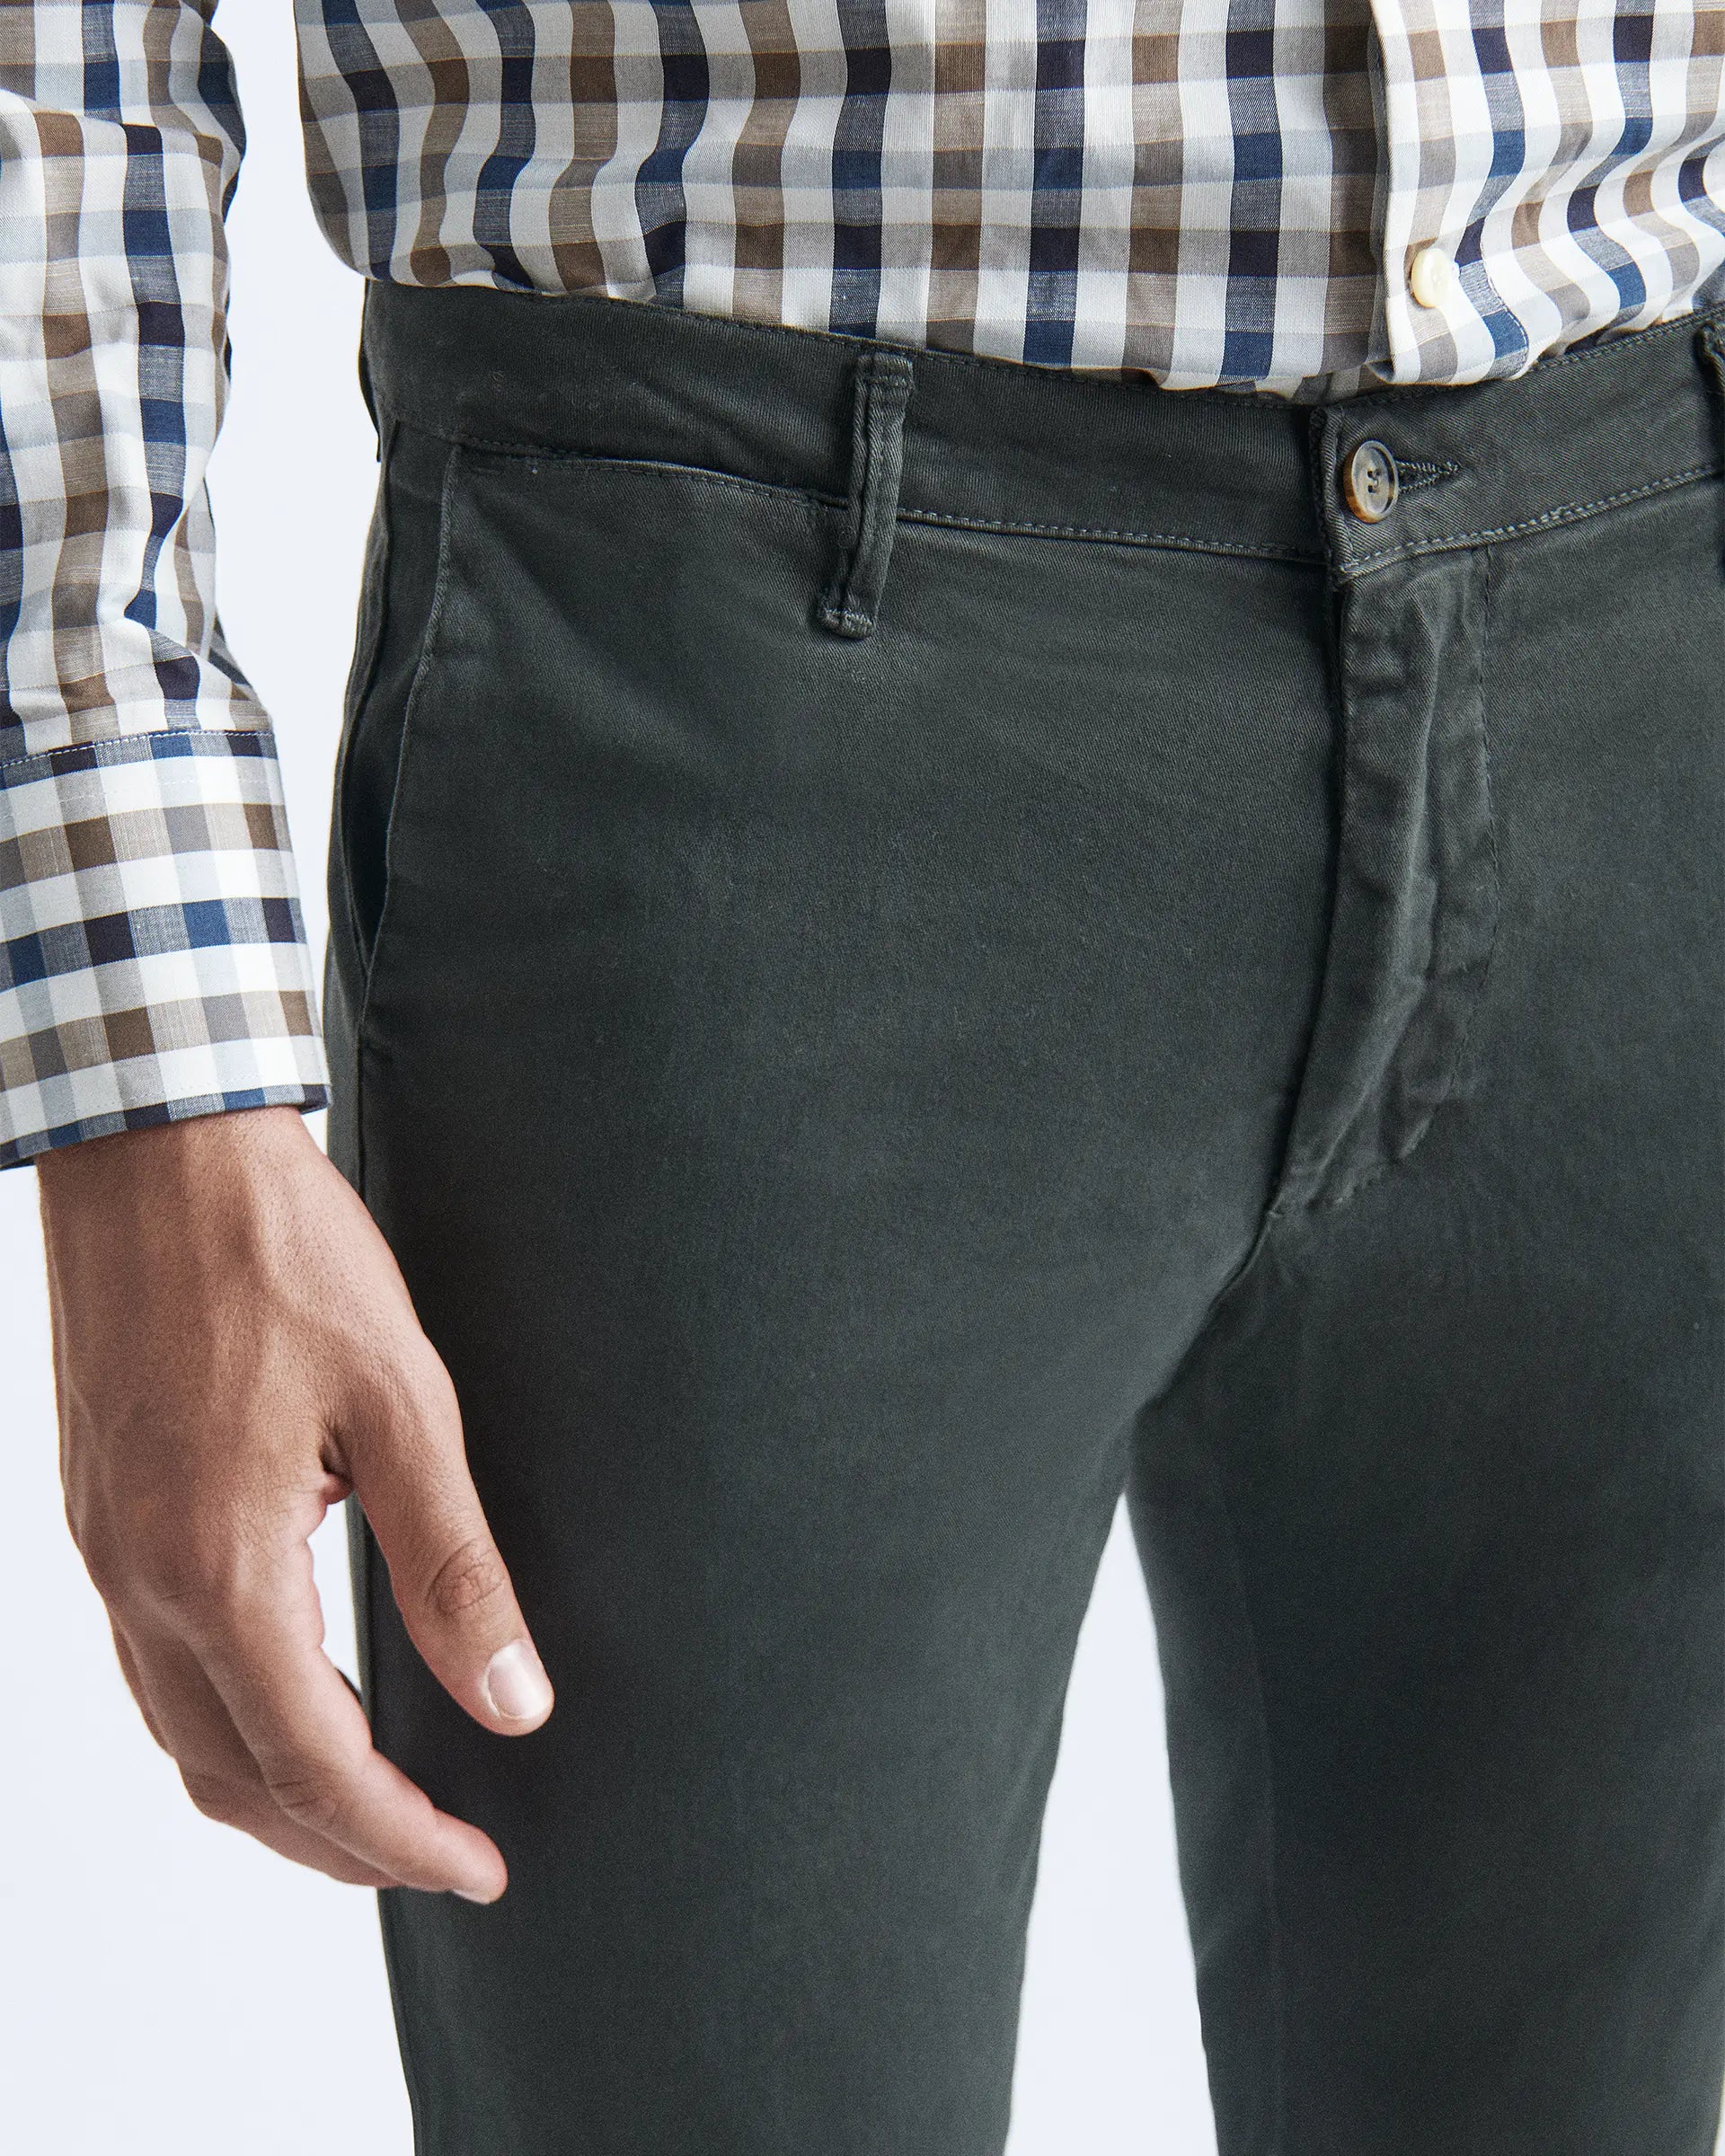 Pantalone antracite in cotone stretch tinto in capo